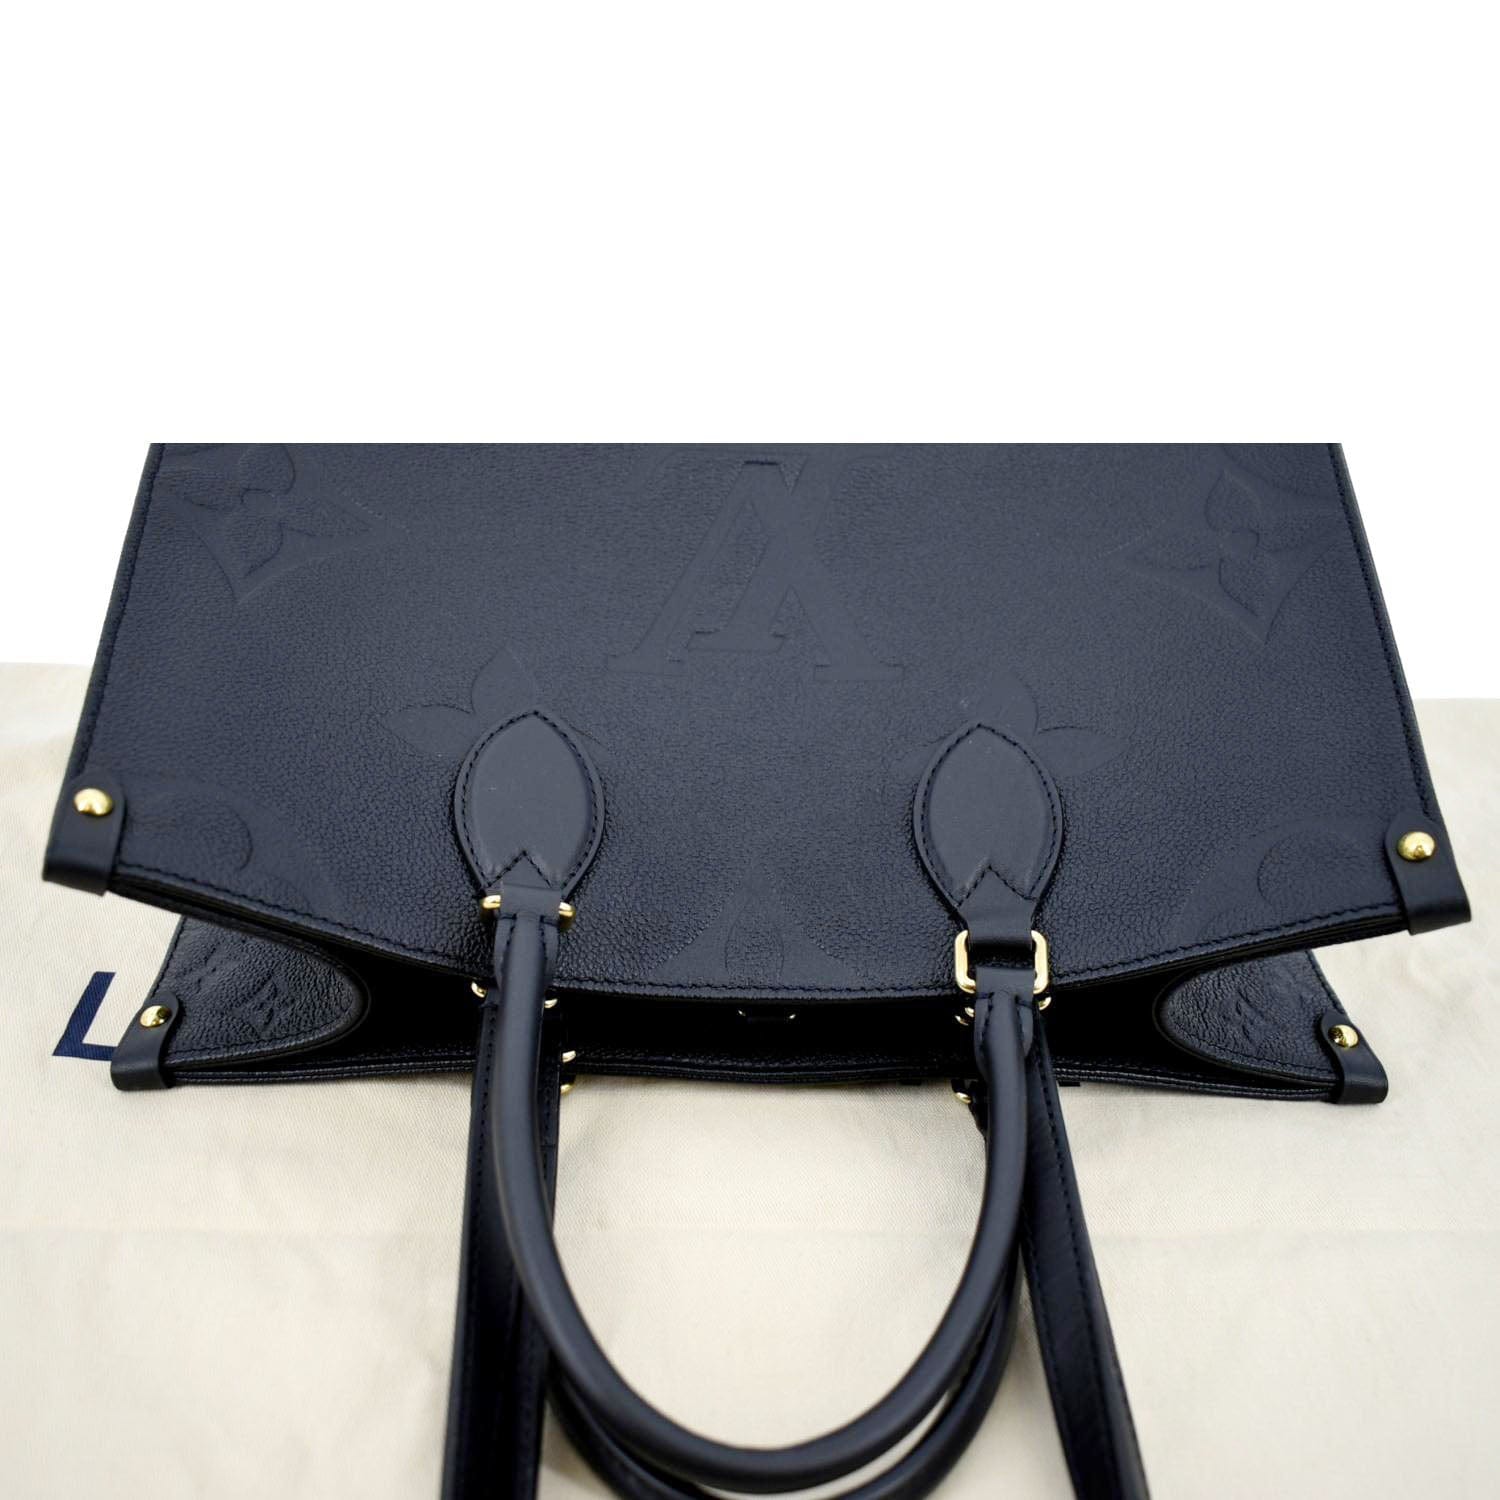 Louis Vuitton Black Monogram Giant Empreinte Leather Onthego GM